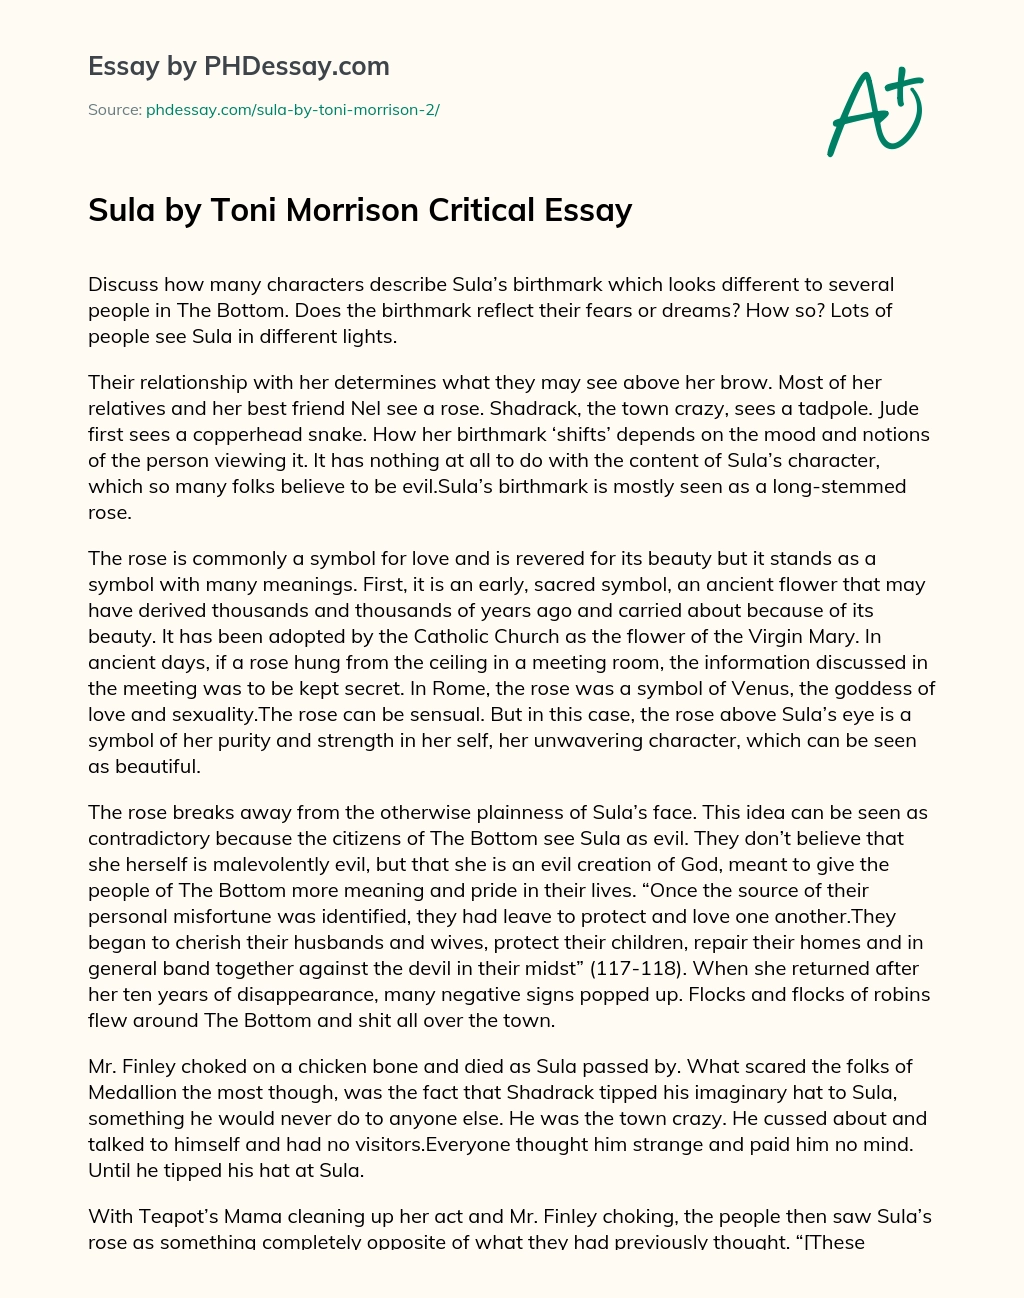 Sula by Toni Morrison Critical Essay essay